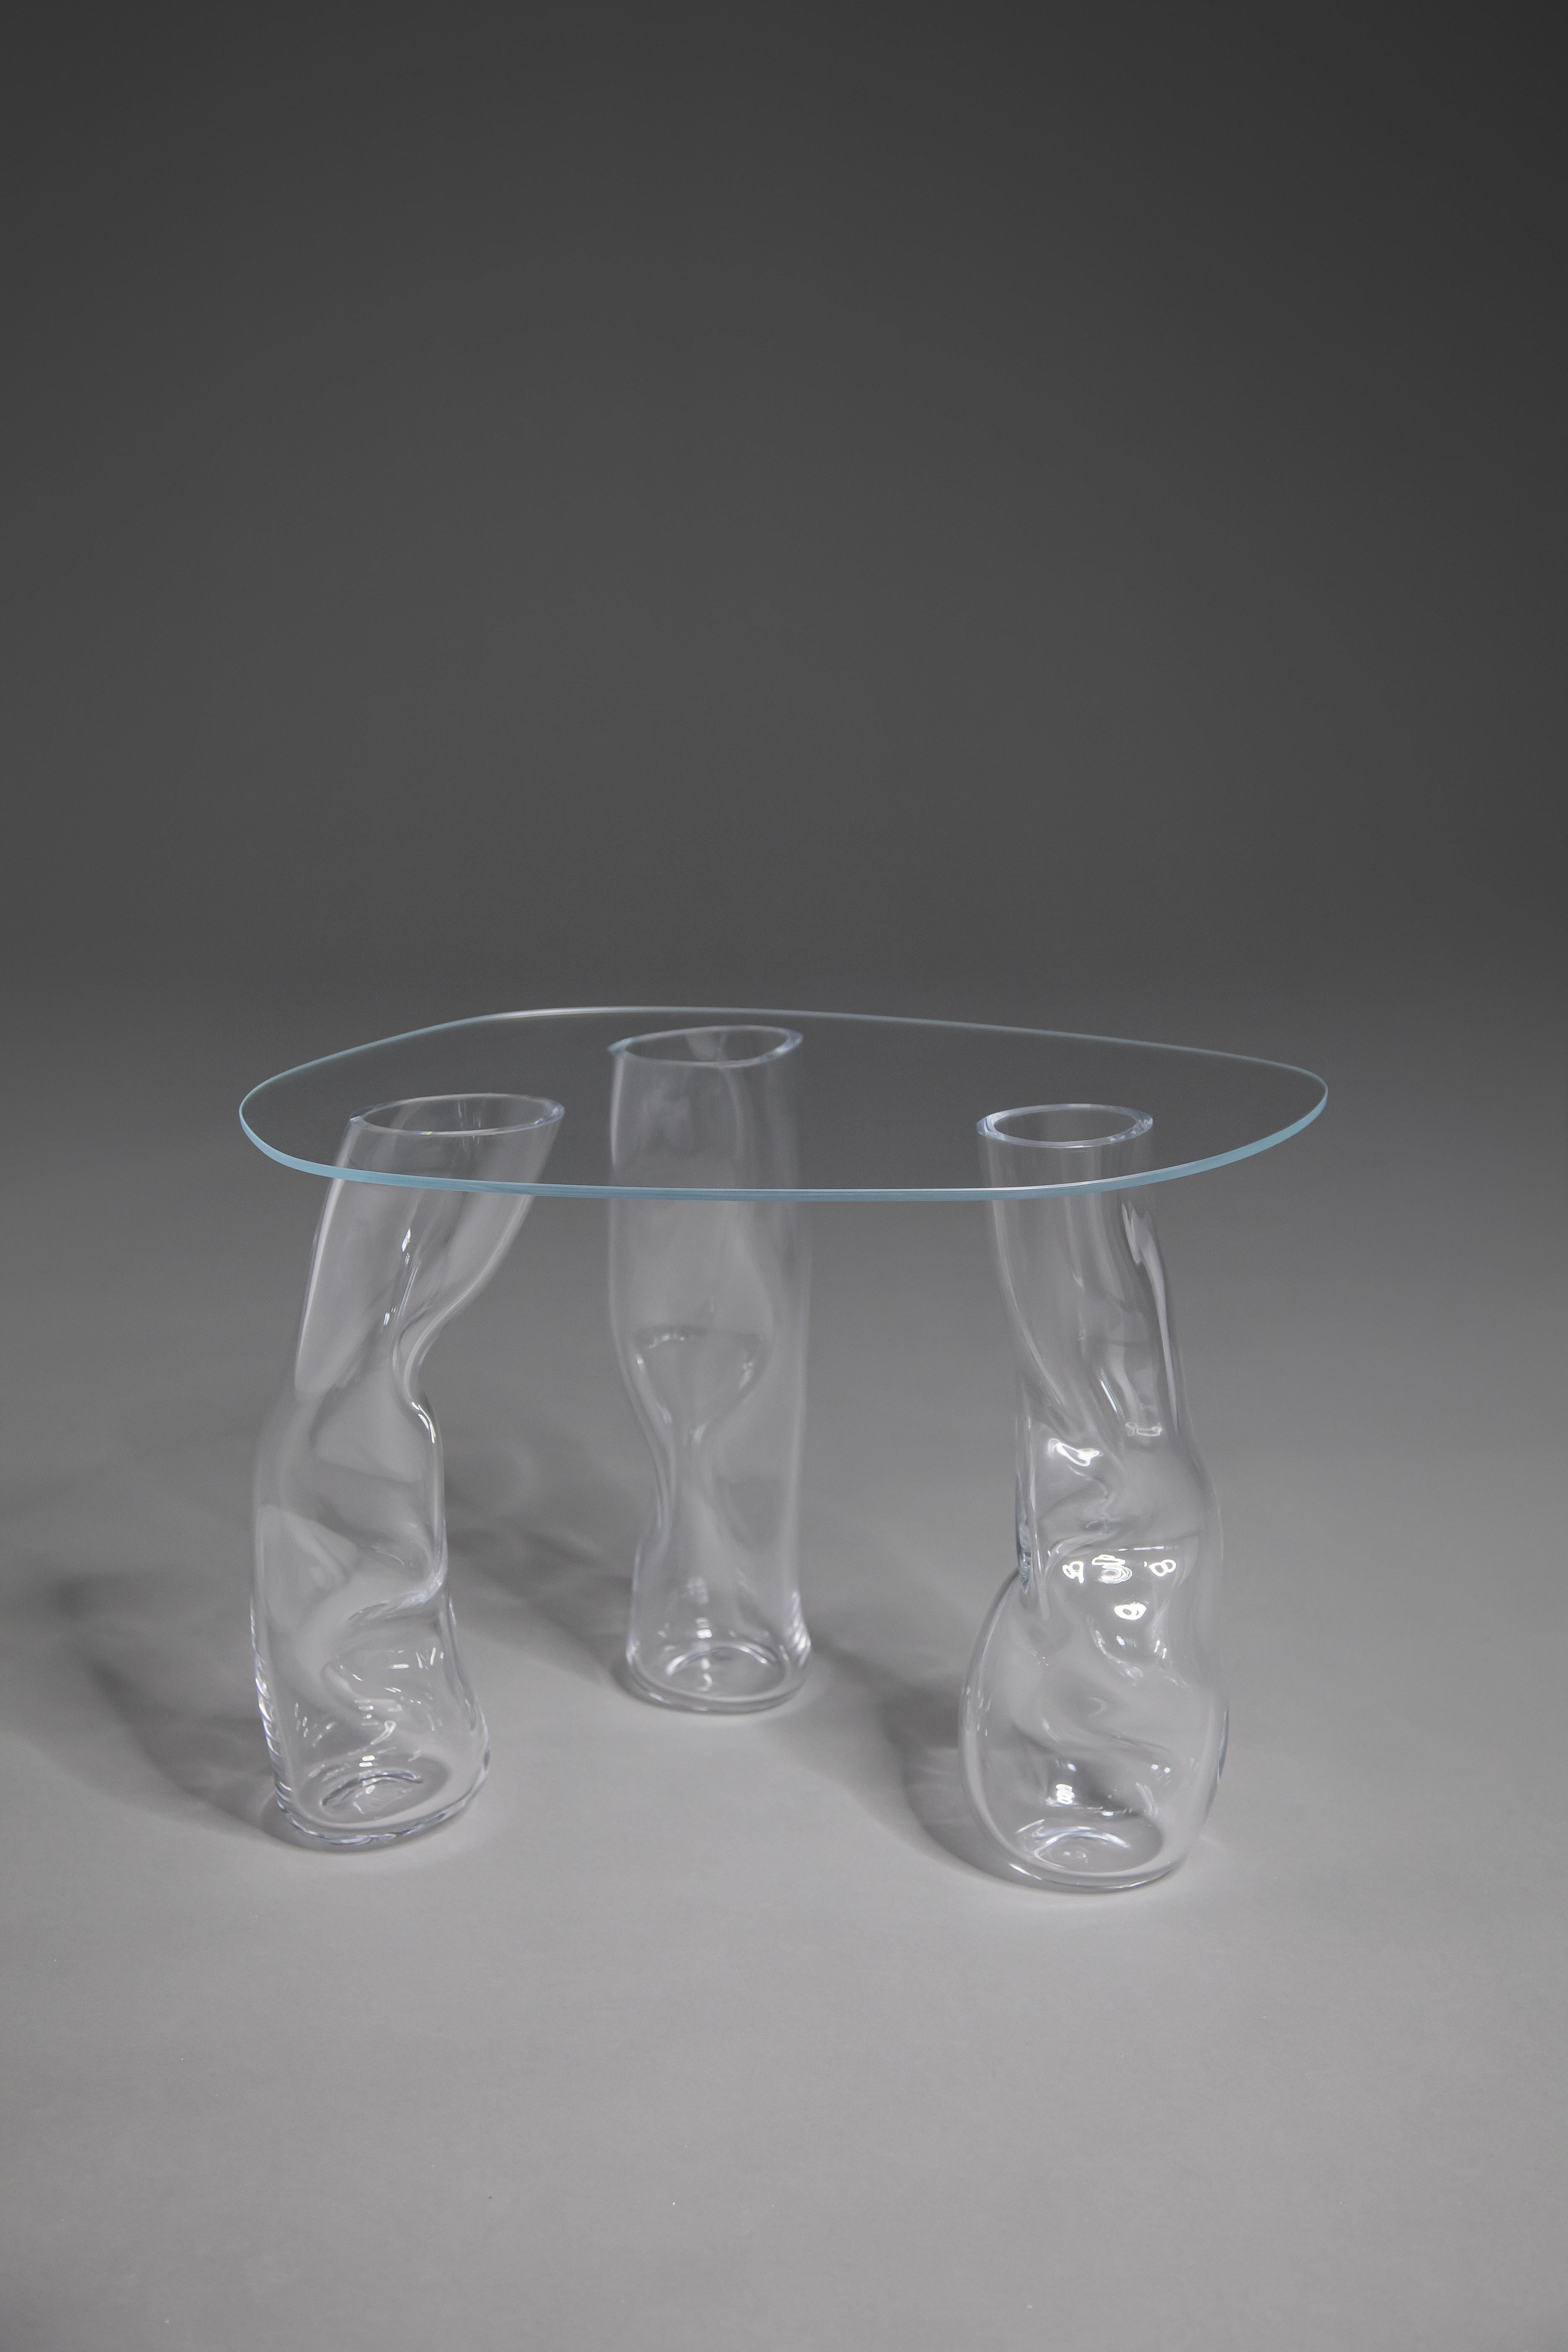 Les tables en verre de Clara Jorisch sont fabriquées en verre soufflé et collées aux UV. Toutes les tables sont uniques - rappelant le geste du souffleur de verre qui donne à chacune sa forme particulière. 

Clara Jorisch est une designer et une